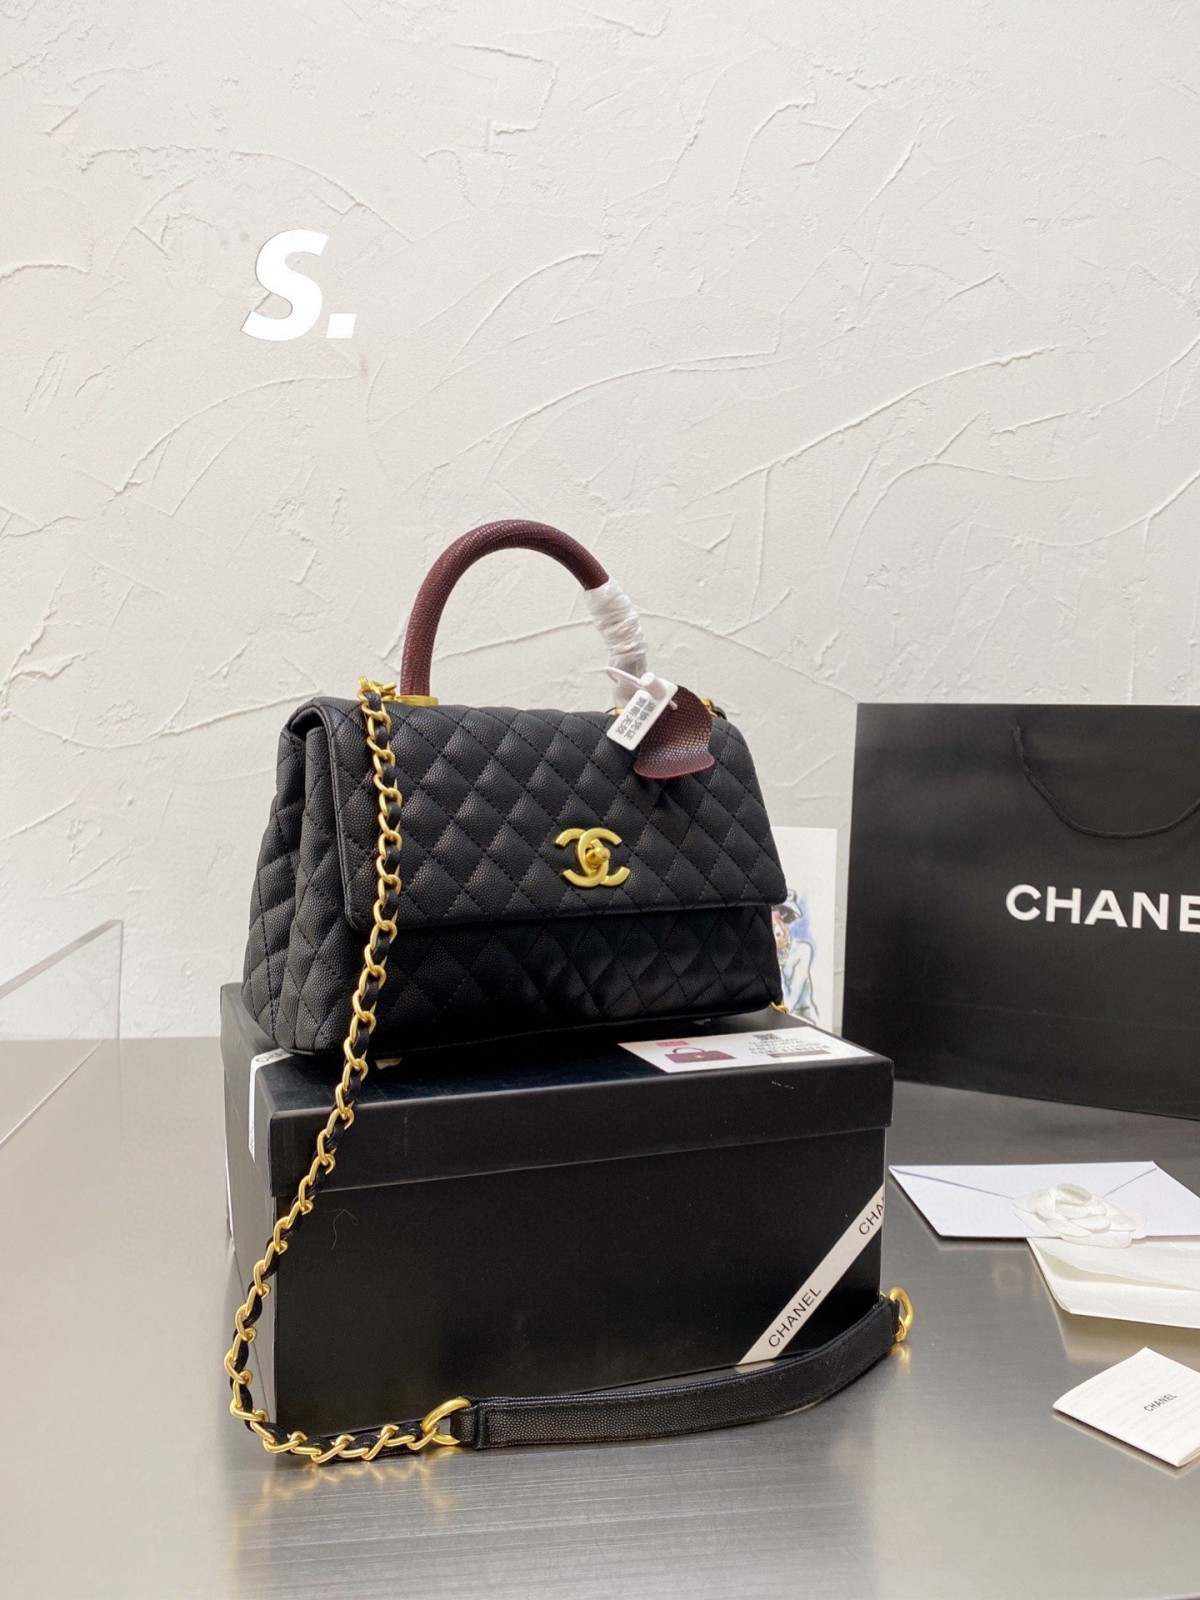 የ Chanel Coco Handle ቅጂ ቦርሳ ጥራት ከእውነተኛው ጋር እኩል ነው! (2022 የዘመነ)-ምርጥ ጥራት ያለው የውሸት የሉዊስ ቫንቶን ቦርሳ የመስመር ላይ መደብር፣ የተባዛ ዲዛይነር ቦርሳ ru